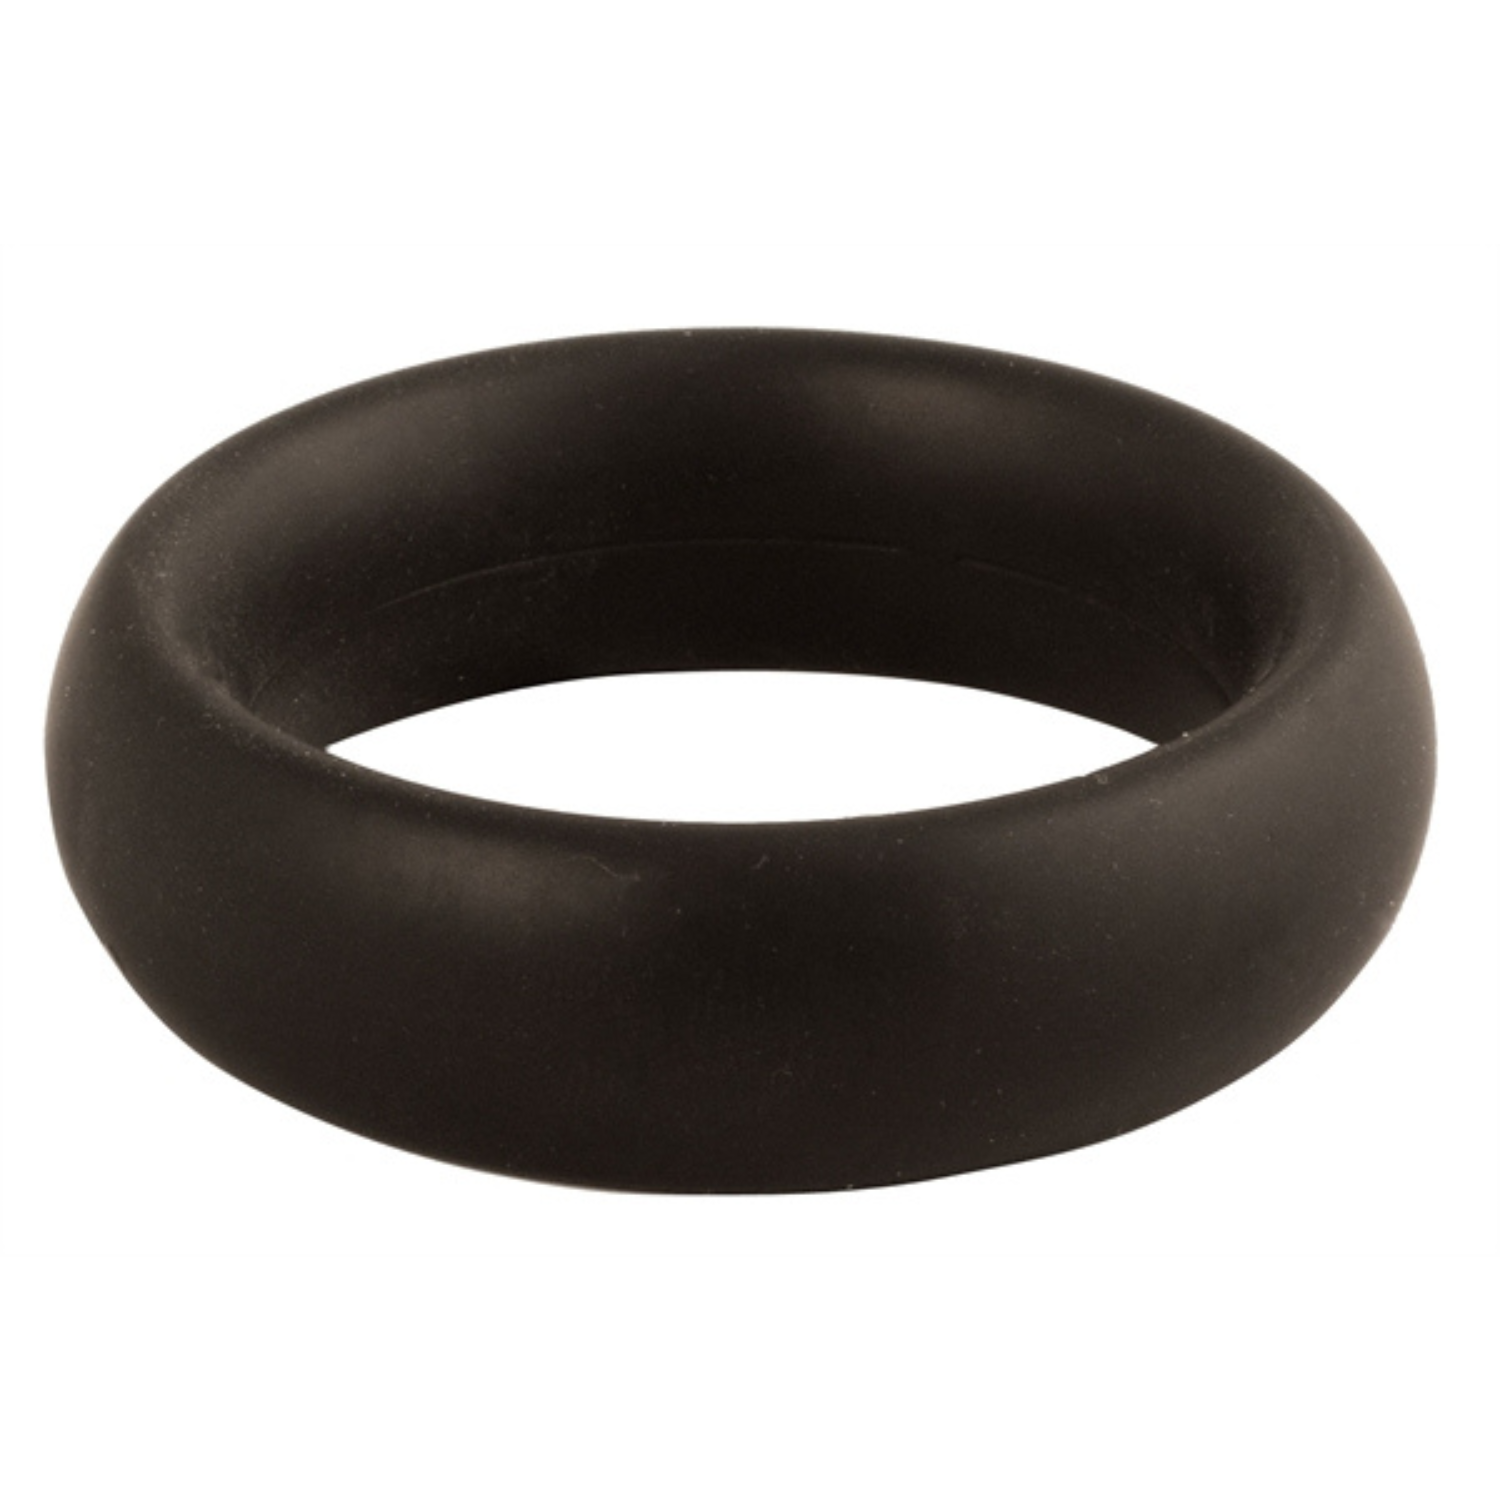 Zwarte donut cock ring met een diameter van 50 mm van Mister B, te koop bij Flavourez.